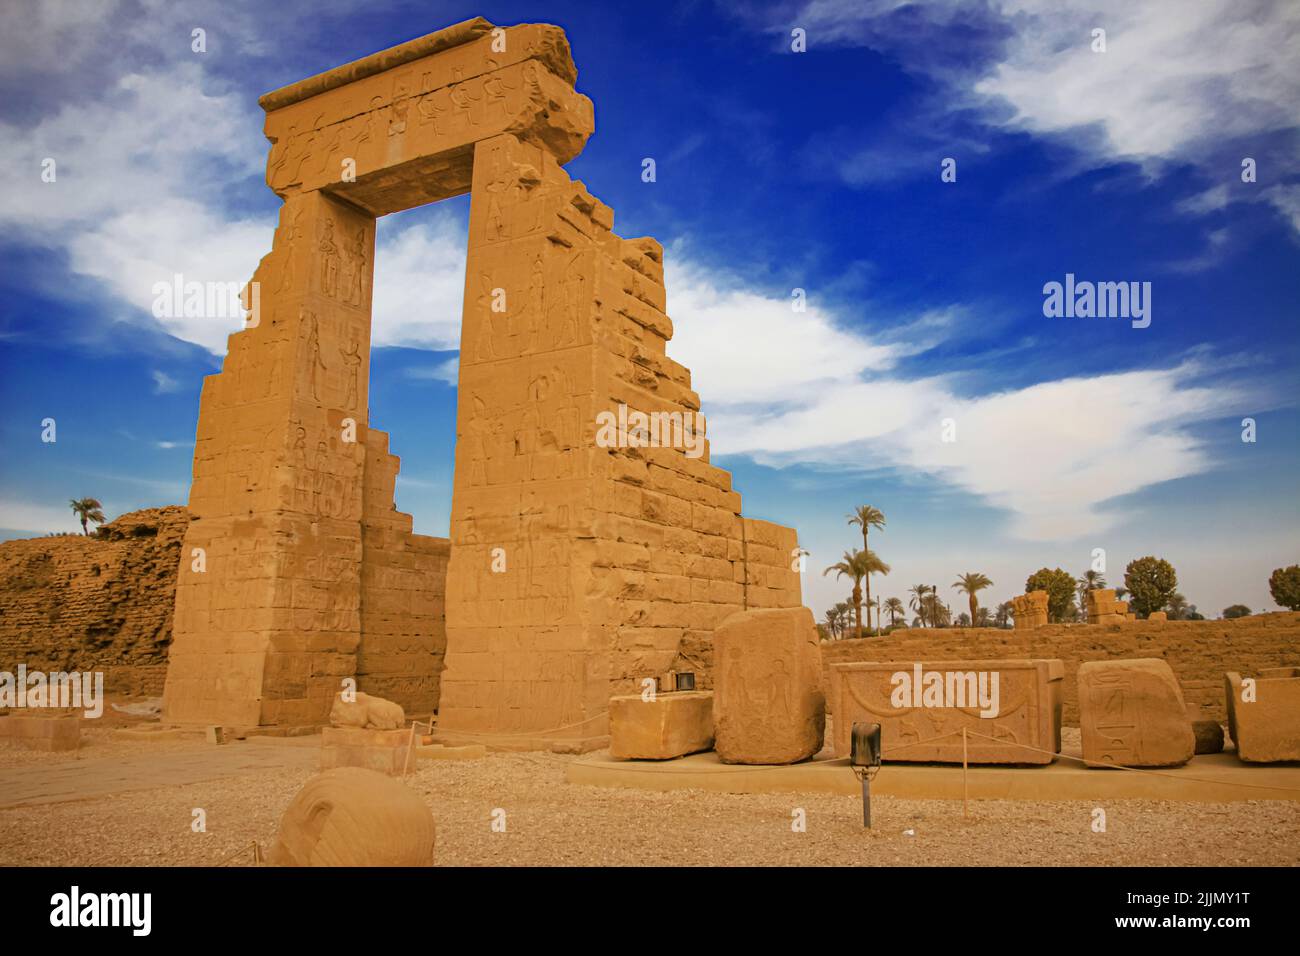 Die Ruinen des schönen alten Tempels von Dendera oder Hathor Tempel. Ägypten, Dendera, ein alter ägyptischer Tempel in der Nähe der Stadt Ken. Stockfoto